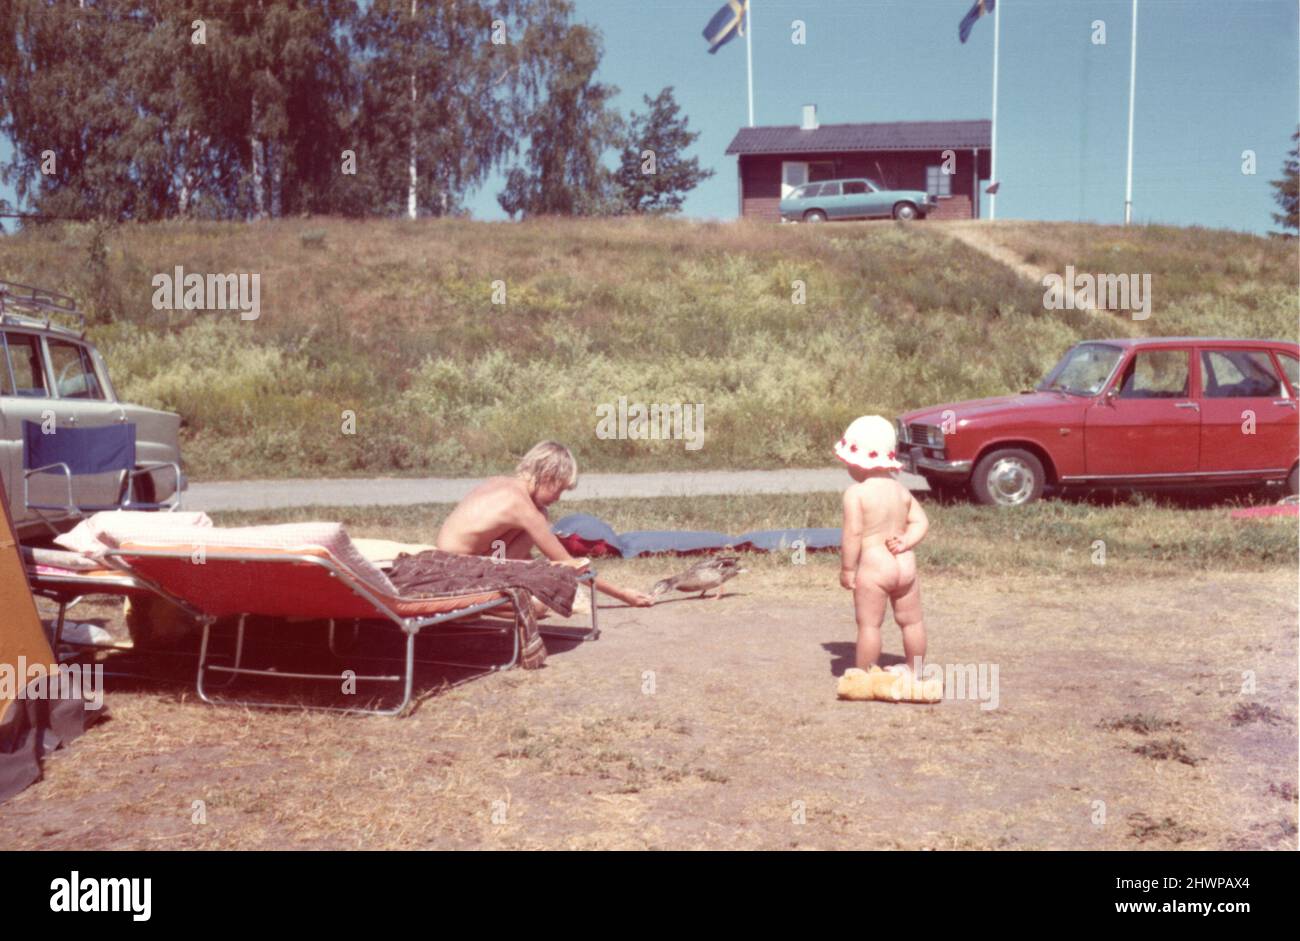 Original-Farbfoto der 1970er Jahre von Kinderwagen und Sonnenliege vor der Holzhütte, Schweden Stockfoto